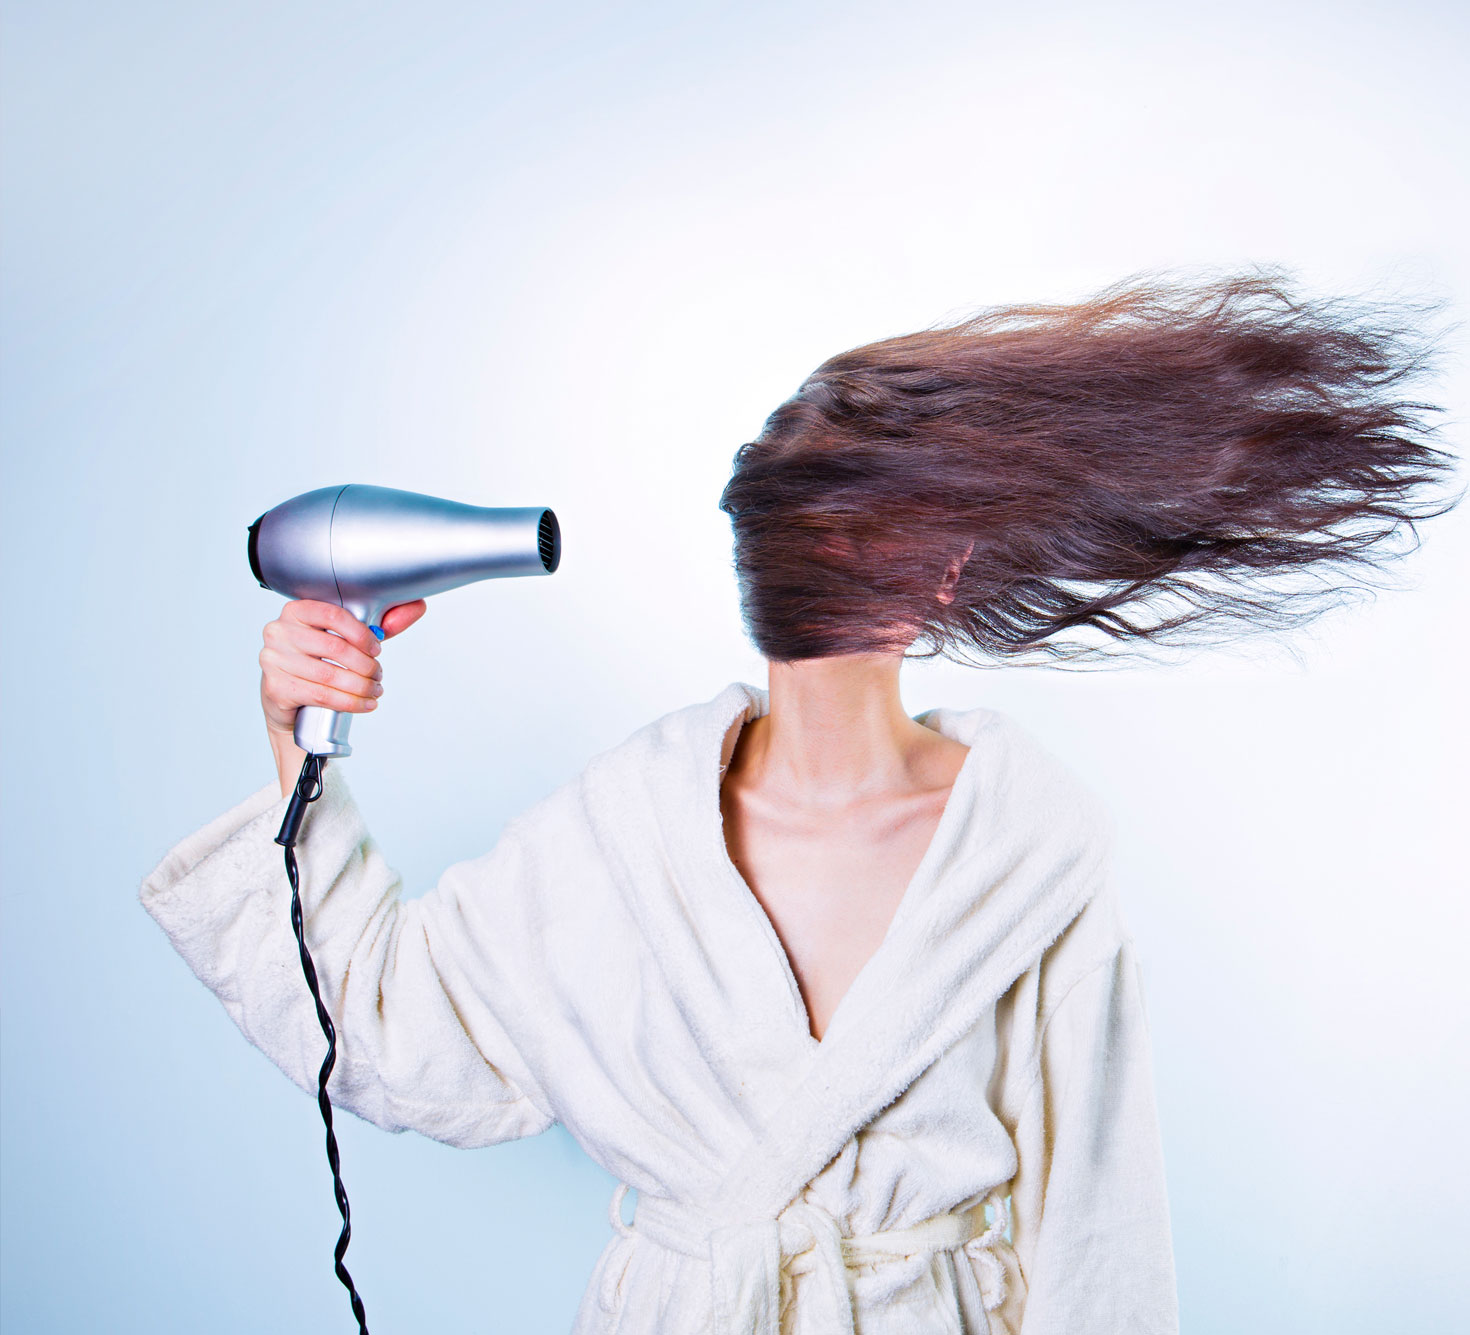 Можно ли сушить волосы феном во время беременности